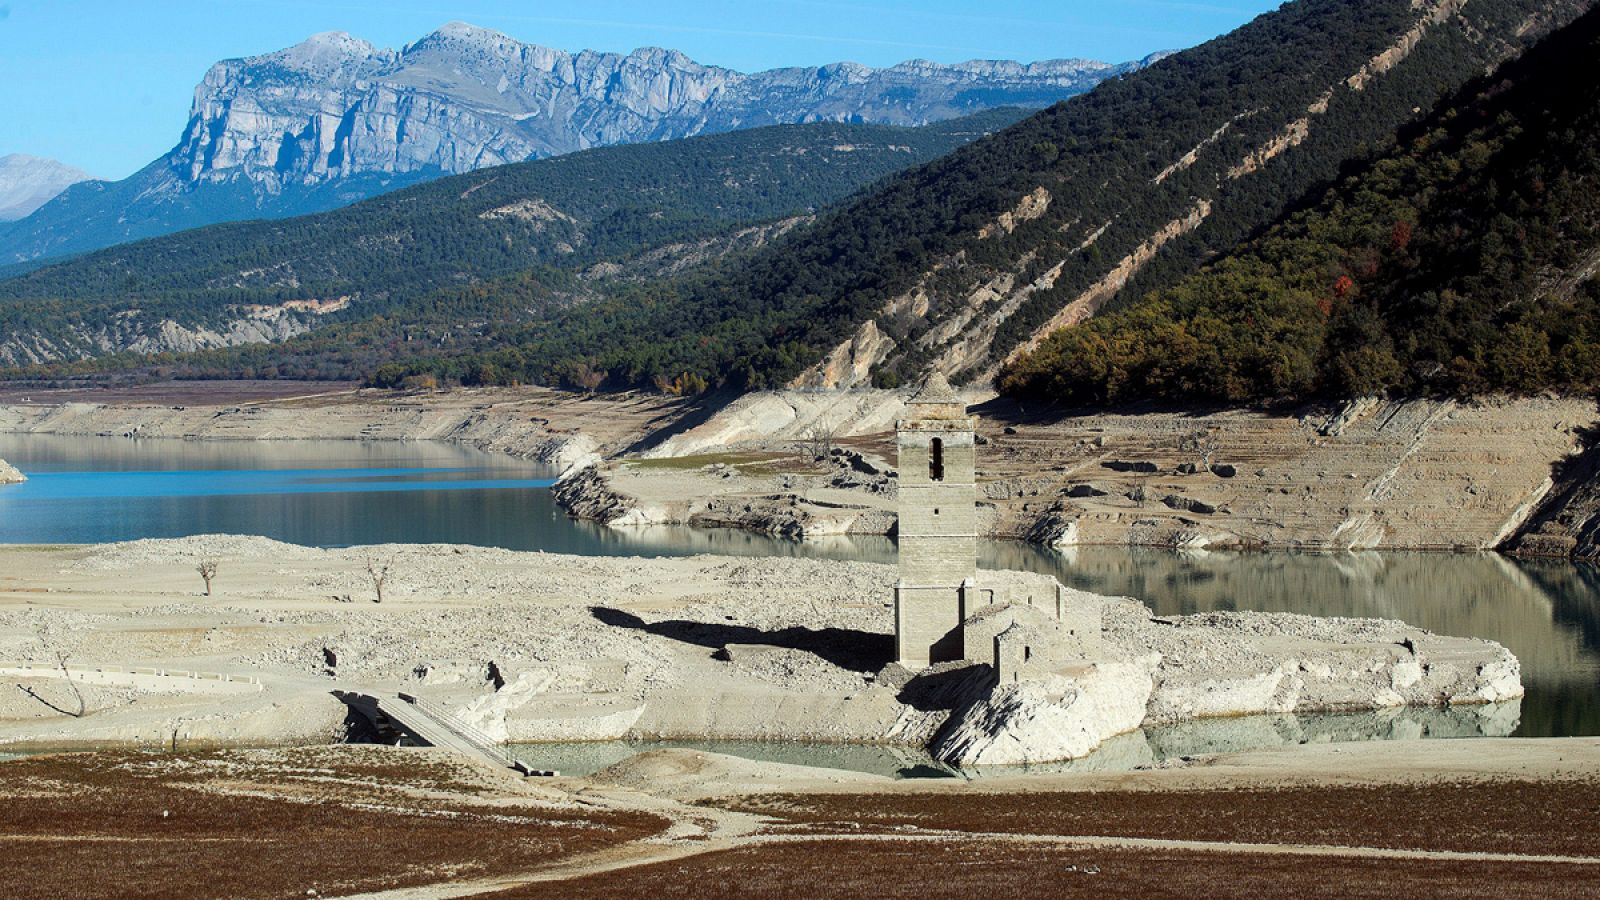 Vista general del pantano de Mediano en el Pirineo de Huesca, donde las huellas de la sequía son evidentes.